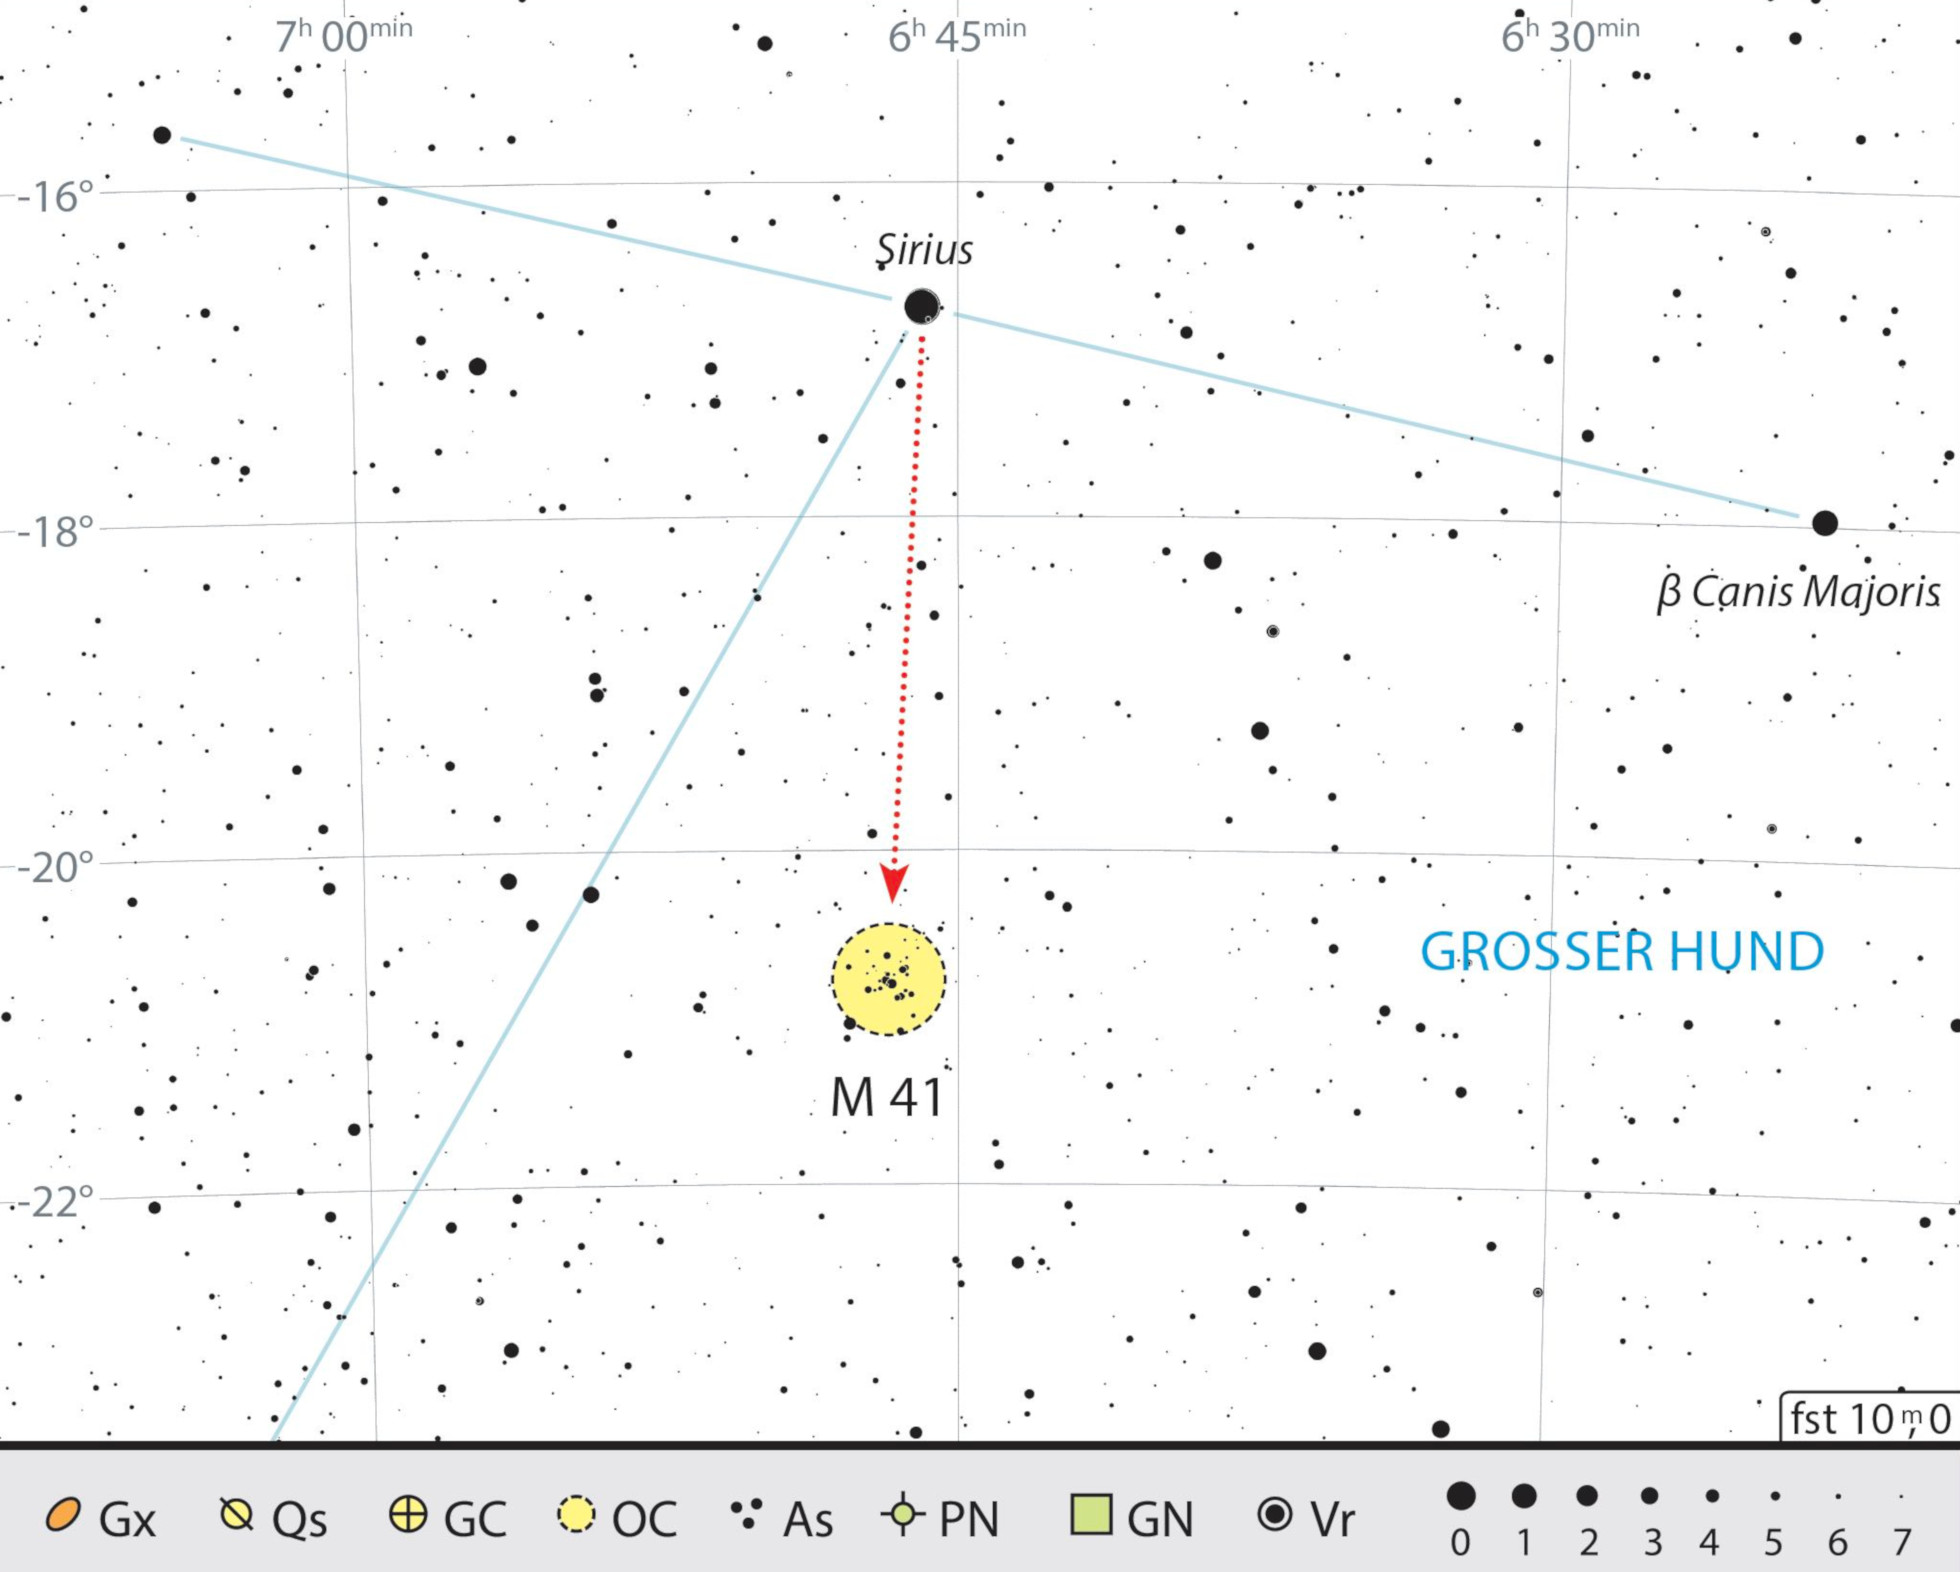 Mapa starhoppingu do Messiera 41 w gwiazdozbiorze Wielkiego Psa. J. Scholten